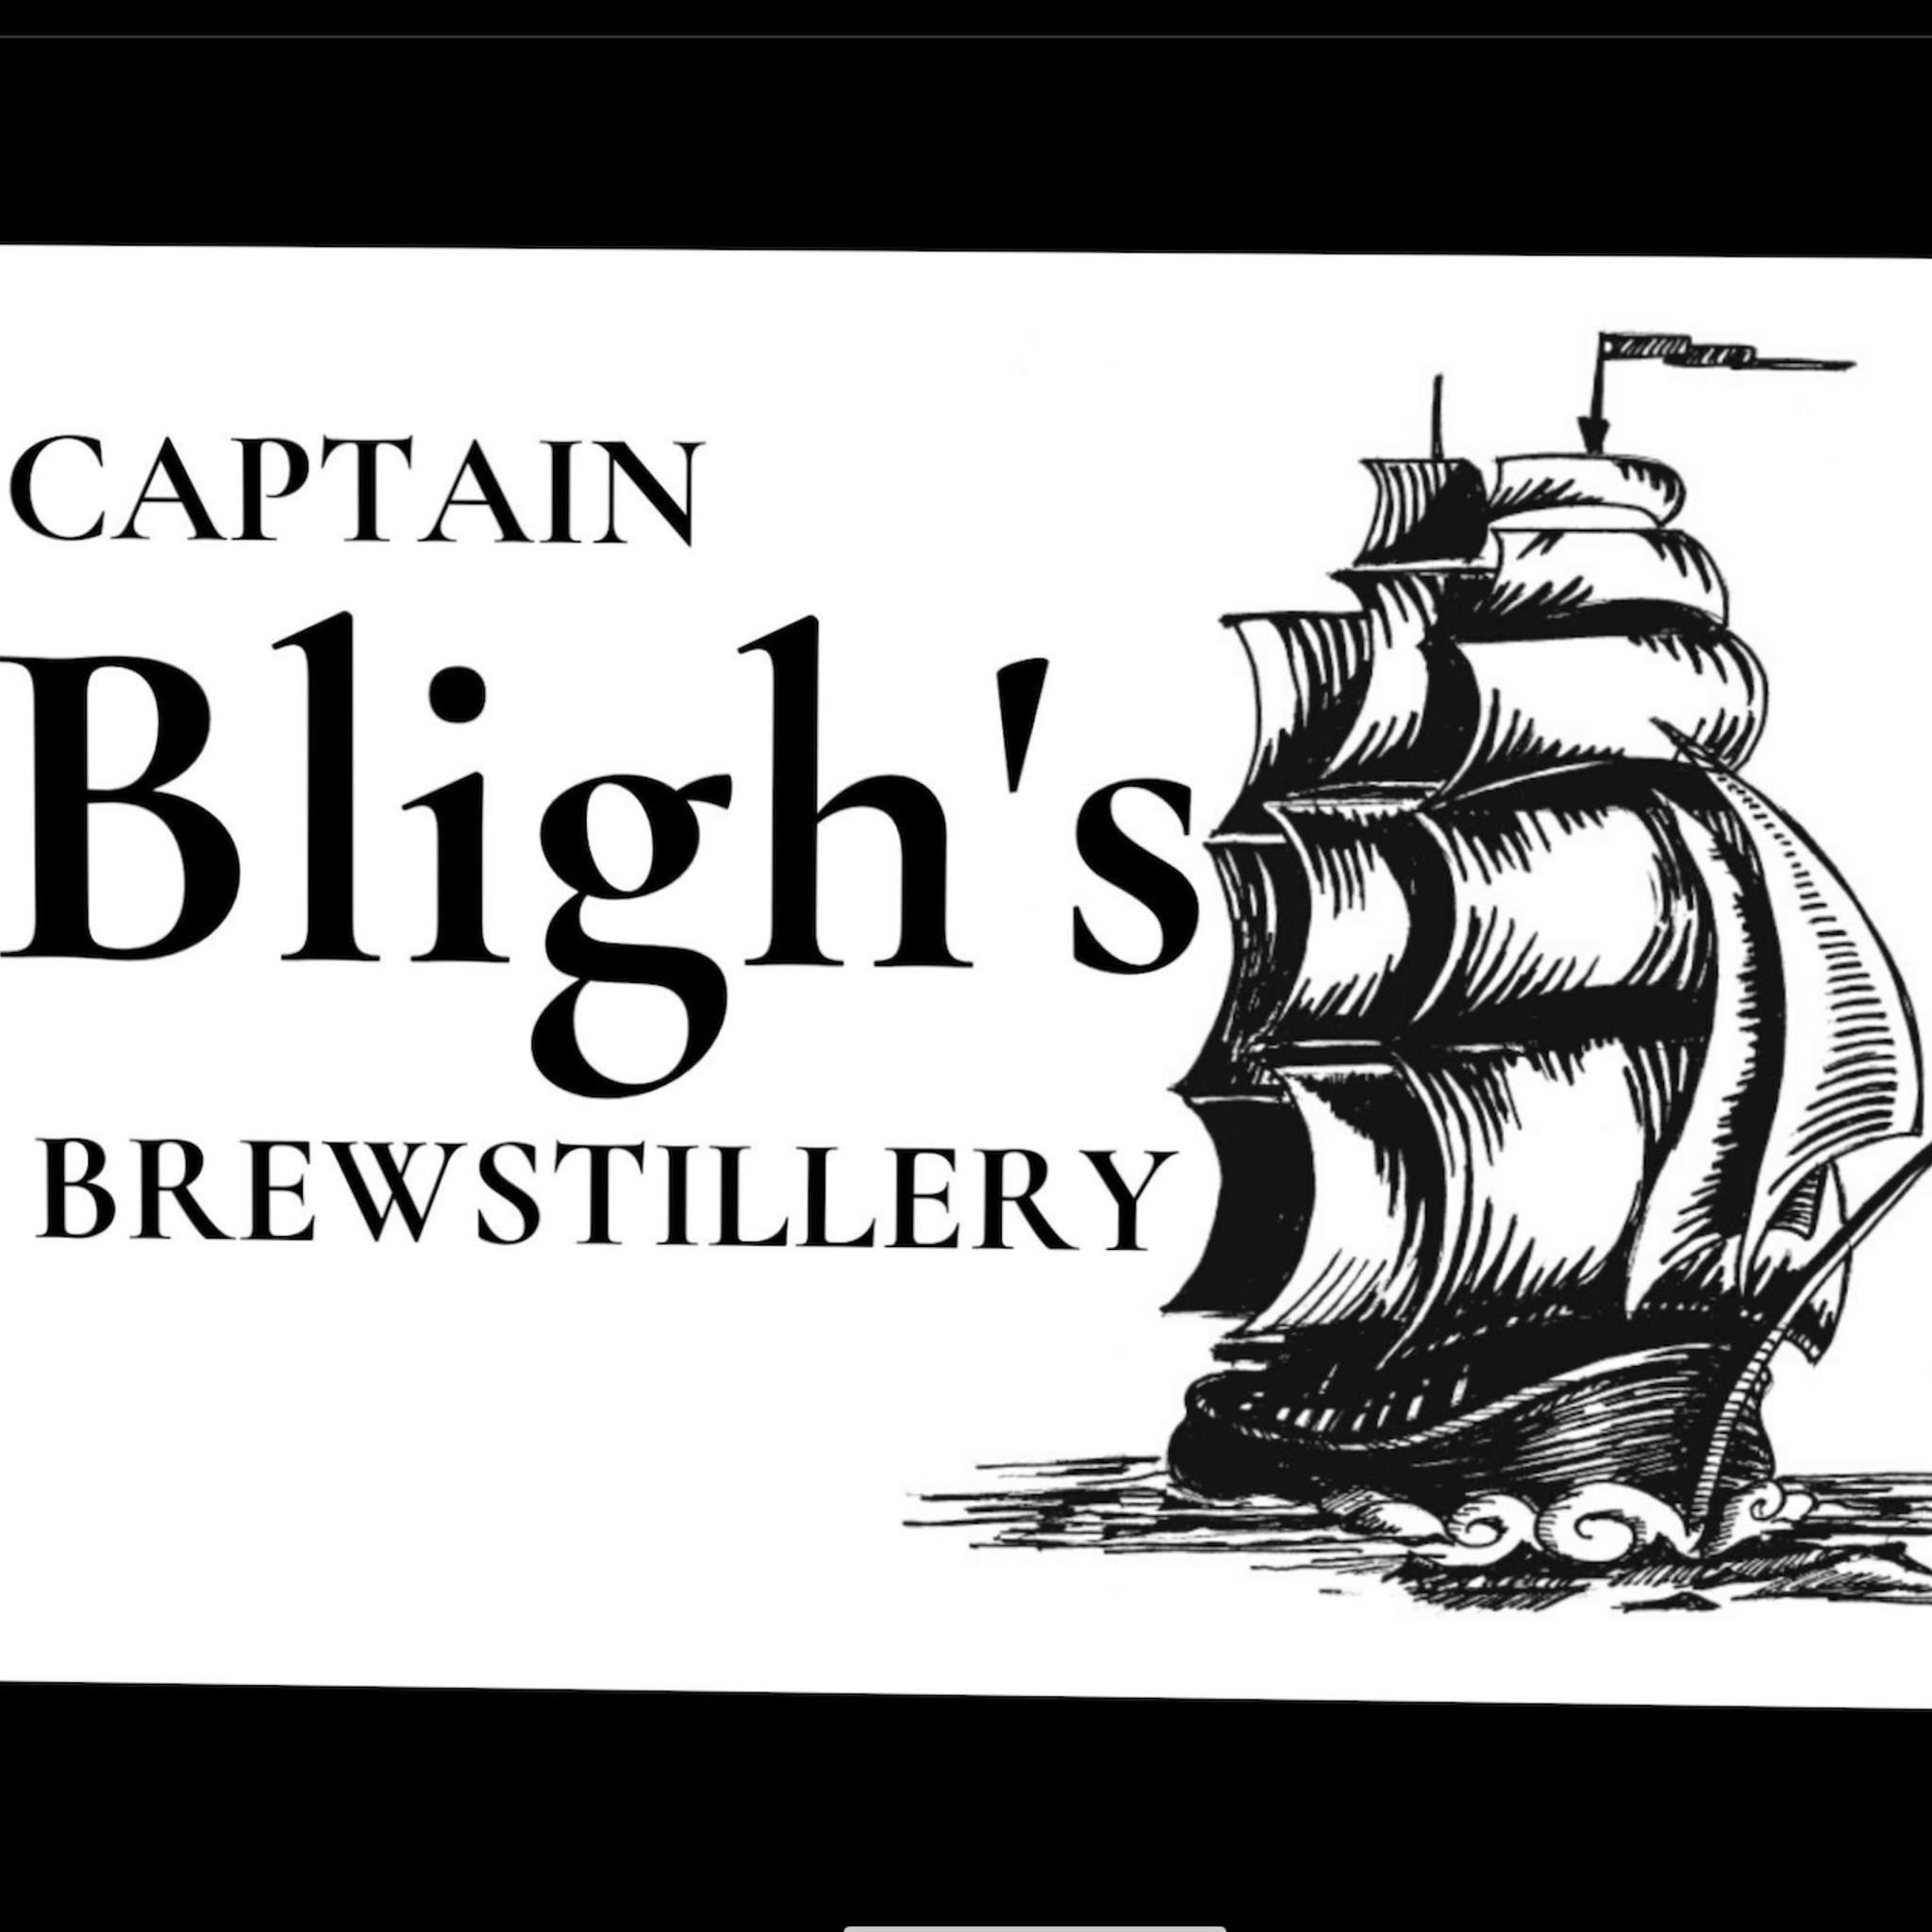 Captain Bligh’s